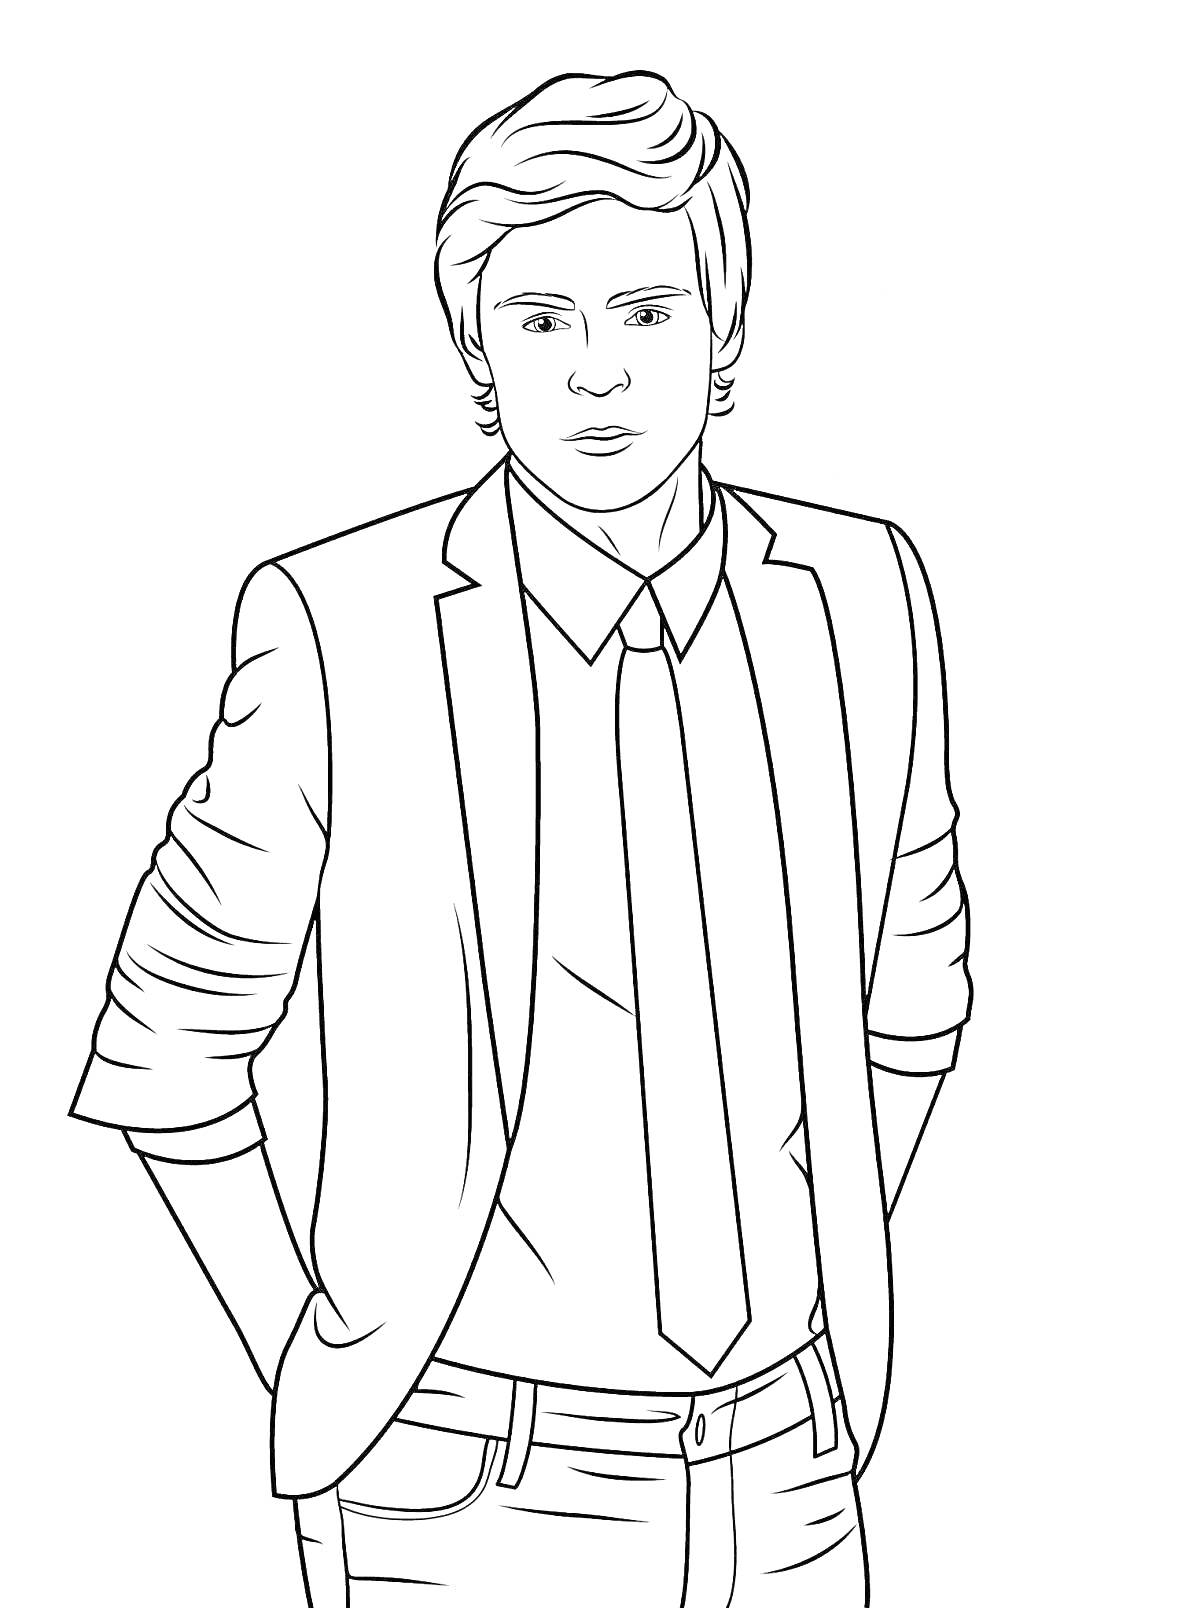 Раскраска Мужчина в пиджаке и галстуке с руками в карманах